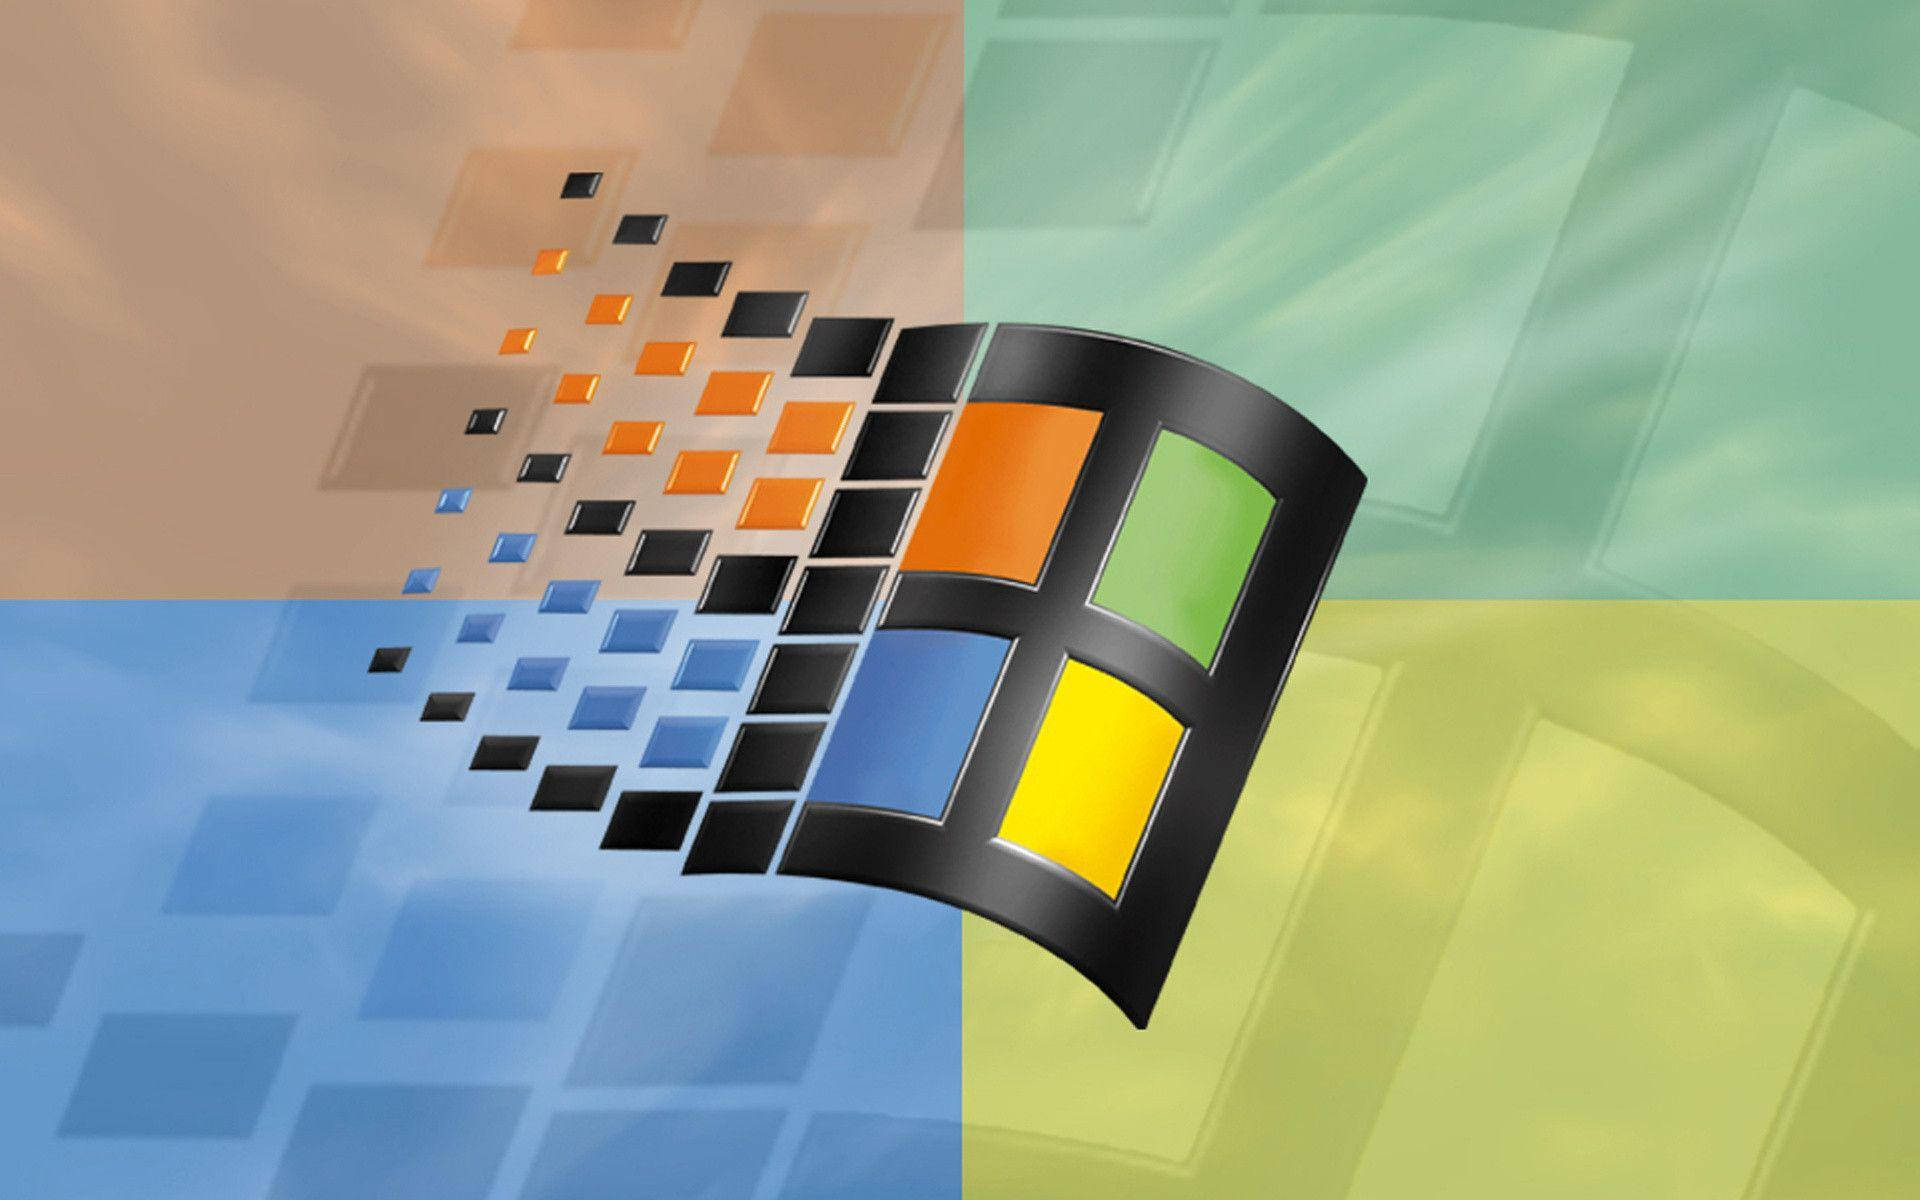 Vorstellungvon Windows 98 - Die Power, Alles Zu Tun. Wallpaper